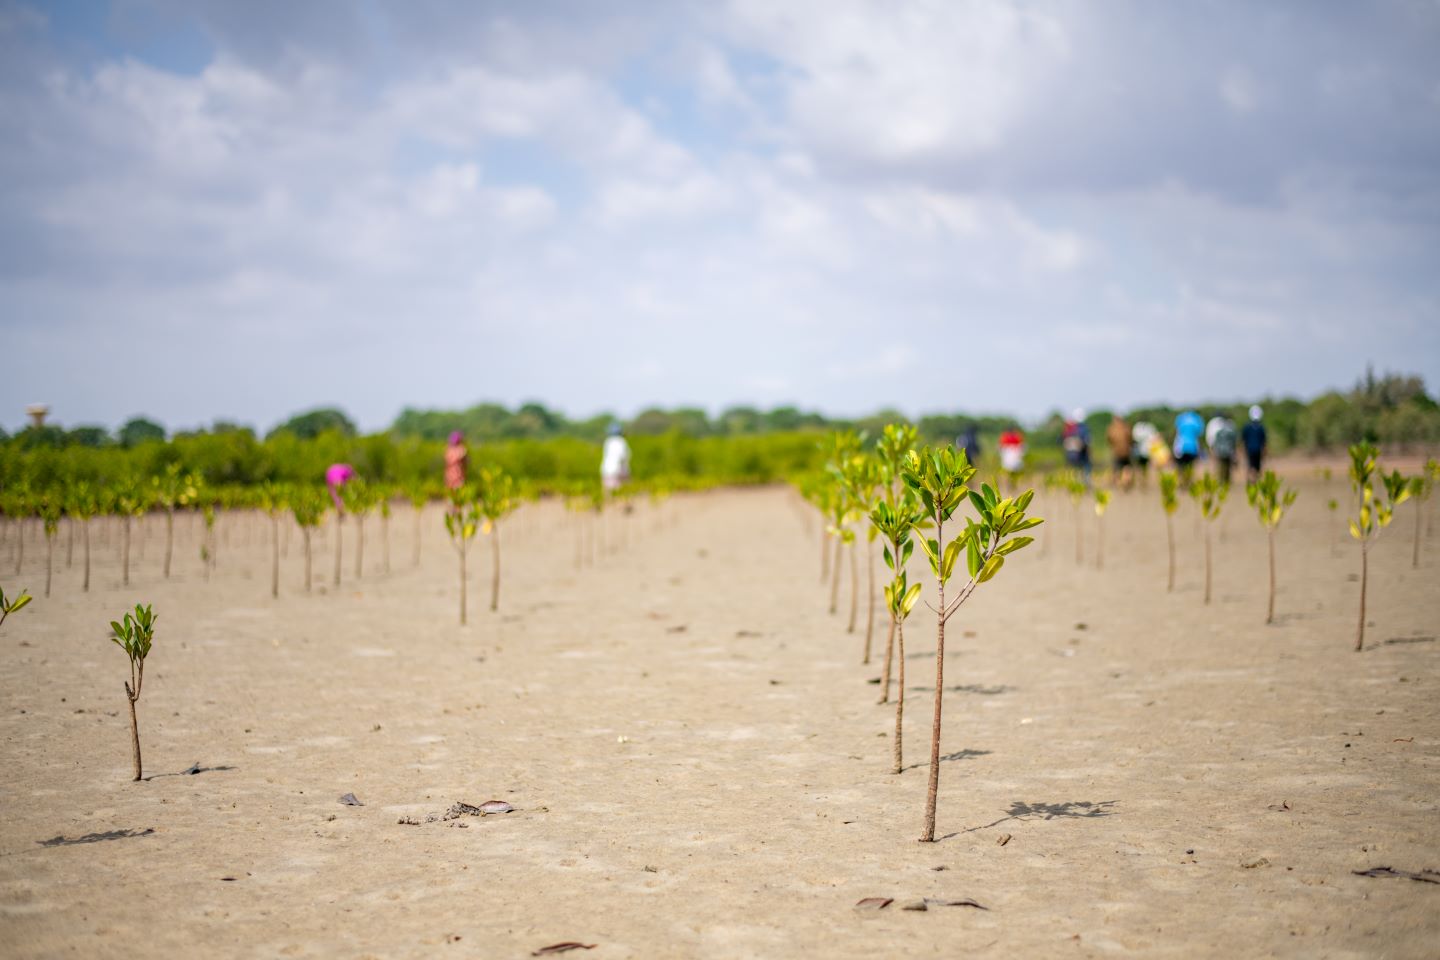 Brotes de mangle se abren paso a través de la tierra. Este tipo de iniciativas de replantación son esenciales para rehabilitar las zonas costeras del Senegal y desarrollar los medios de vida de las aldeas locales. ©FIDA/Ibrahima Kebe Diallo